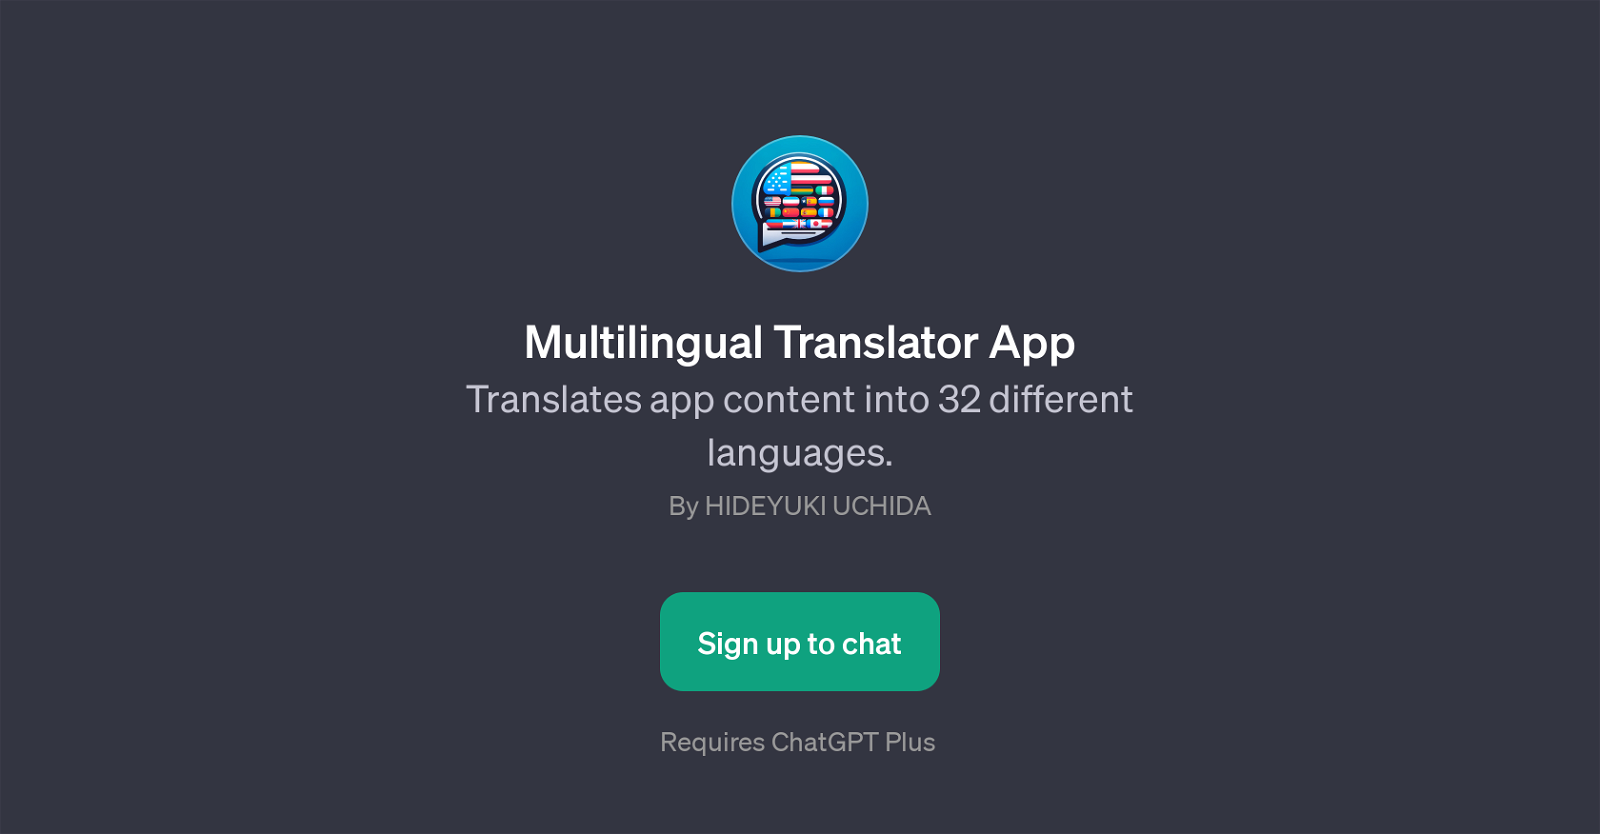 Multilingual Translator App website